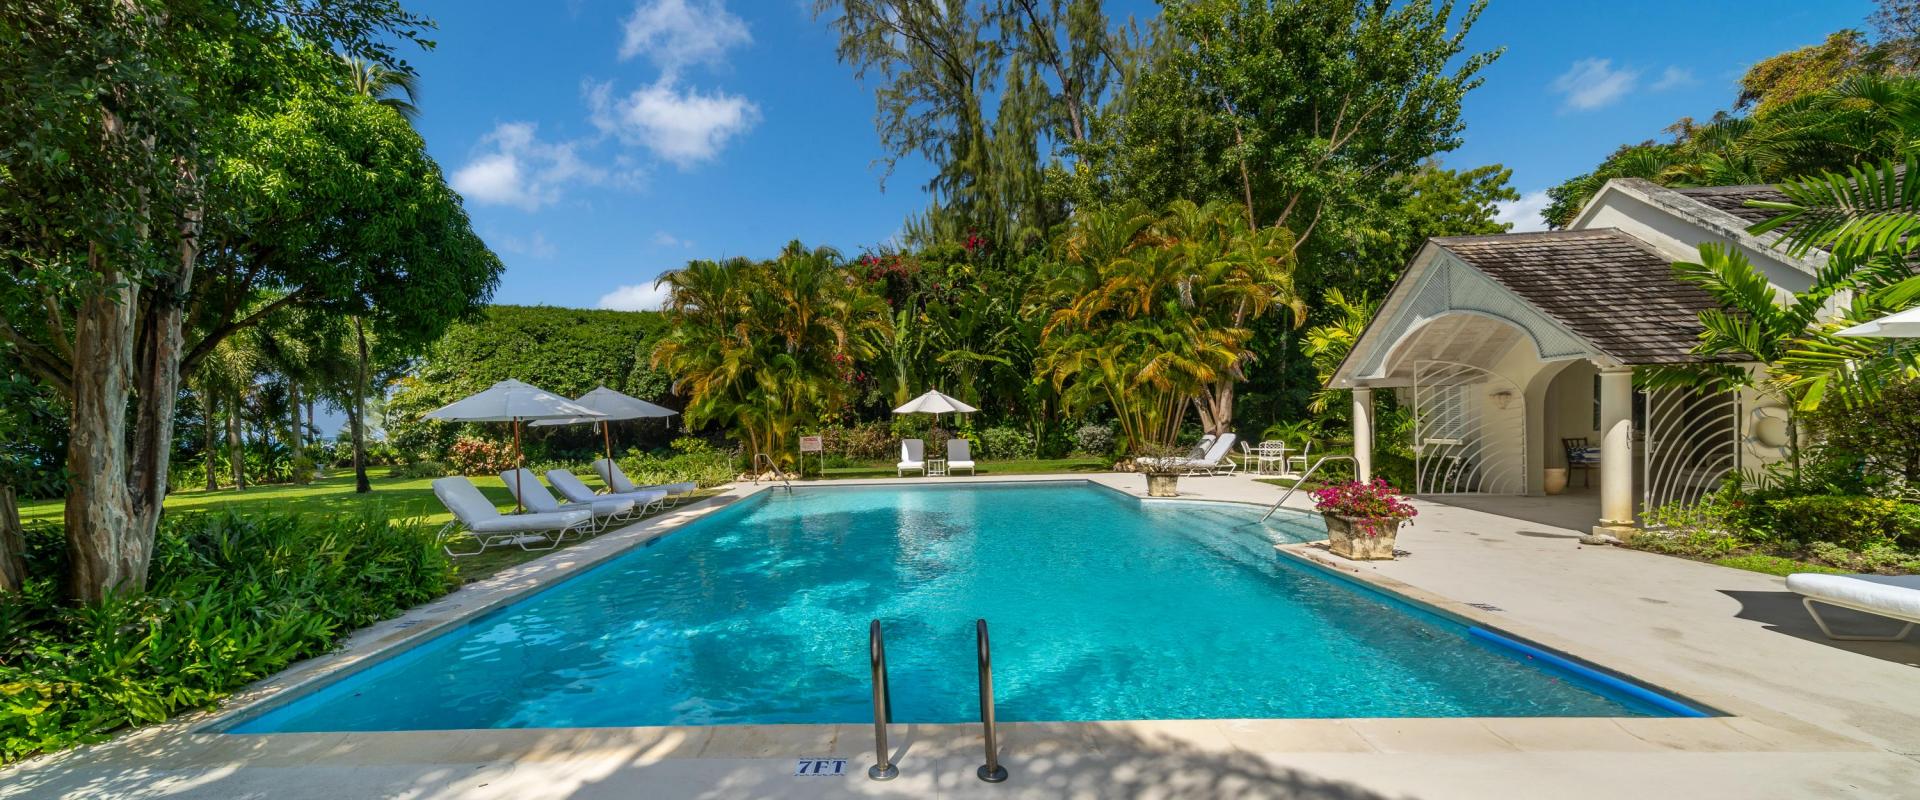 Heronetta Sandy Lane Estate Barbados Pool Deck and Surrounding Gardens